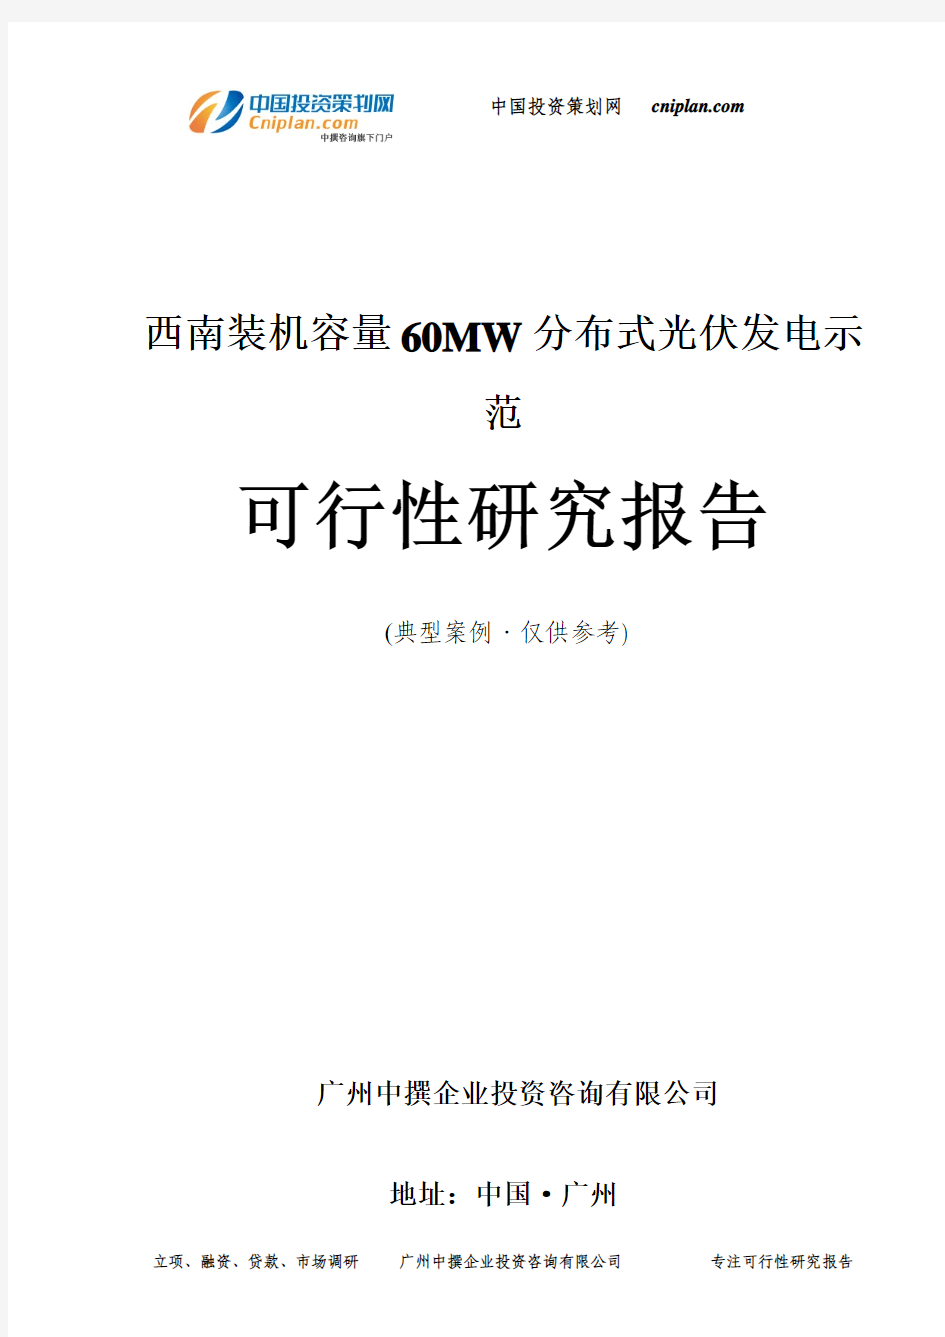 西南装机容量60MW分布式光伏发电示范可行性研究报告-广州中撰咨询